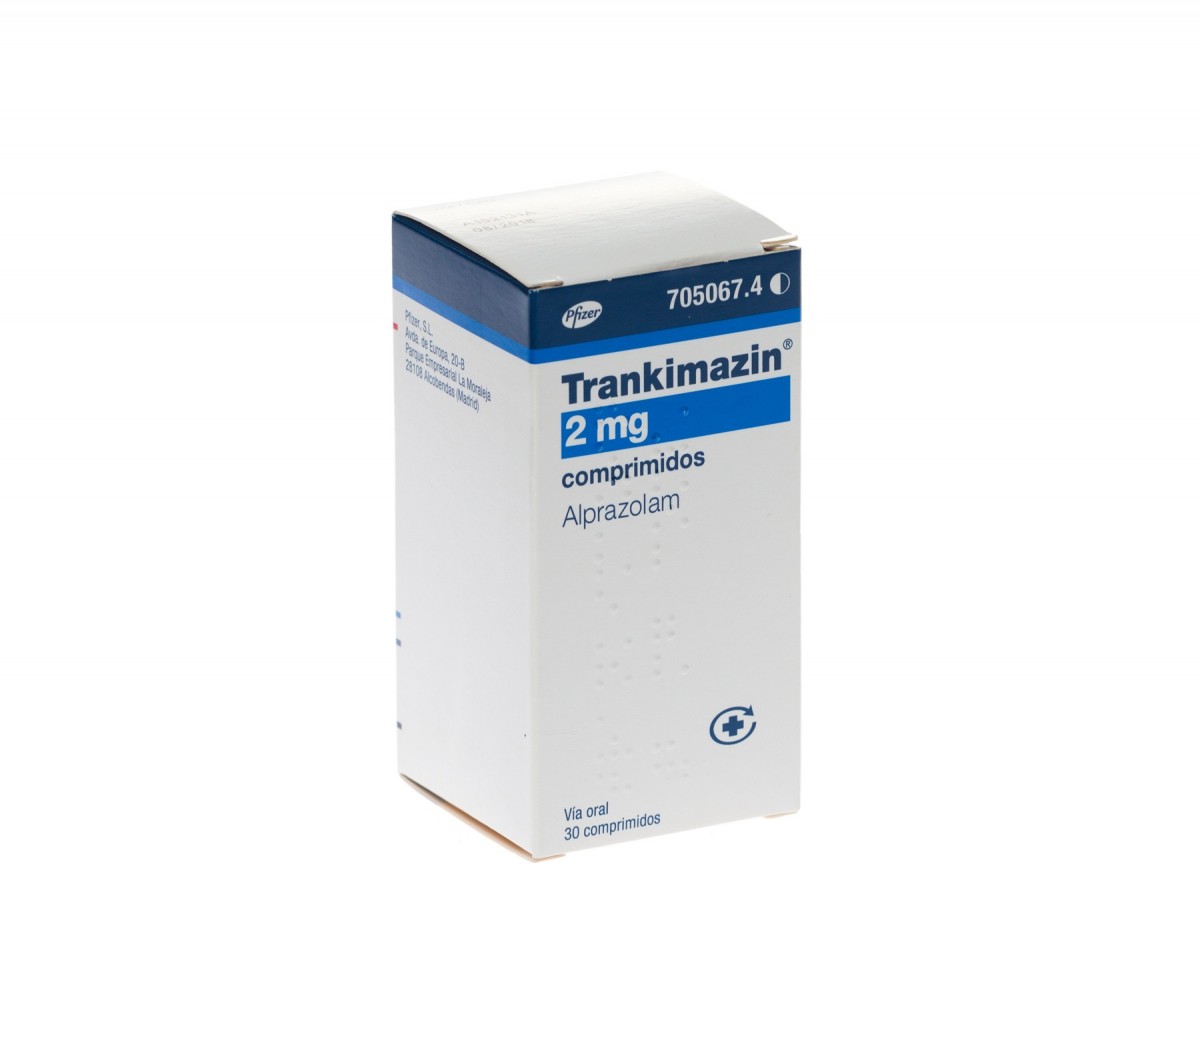 TRANKIMAZIN 2 mg COMPRIMIDOS, 30 comprimidos fotografía del envase.